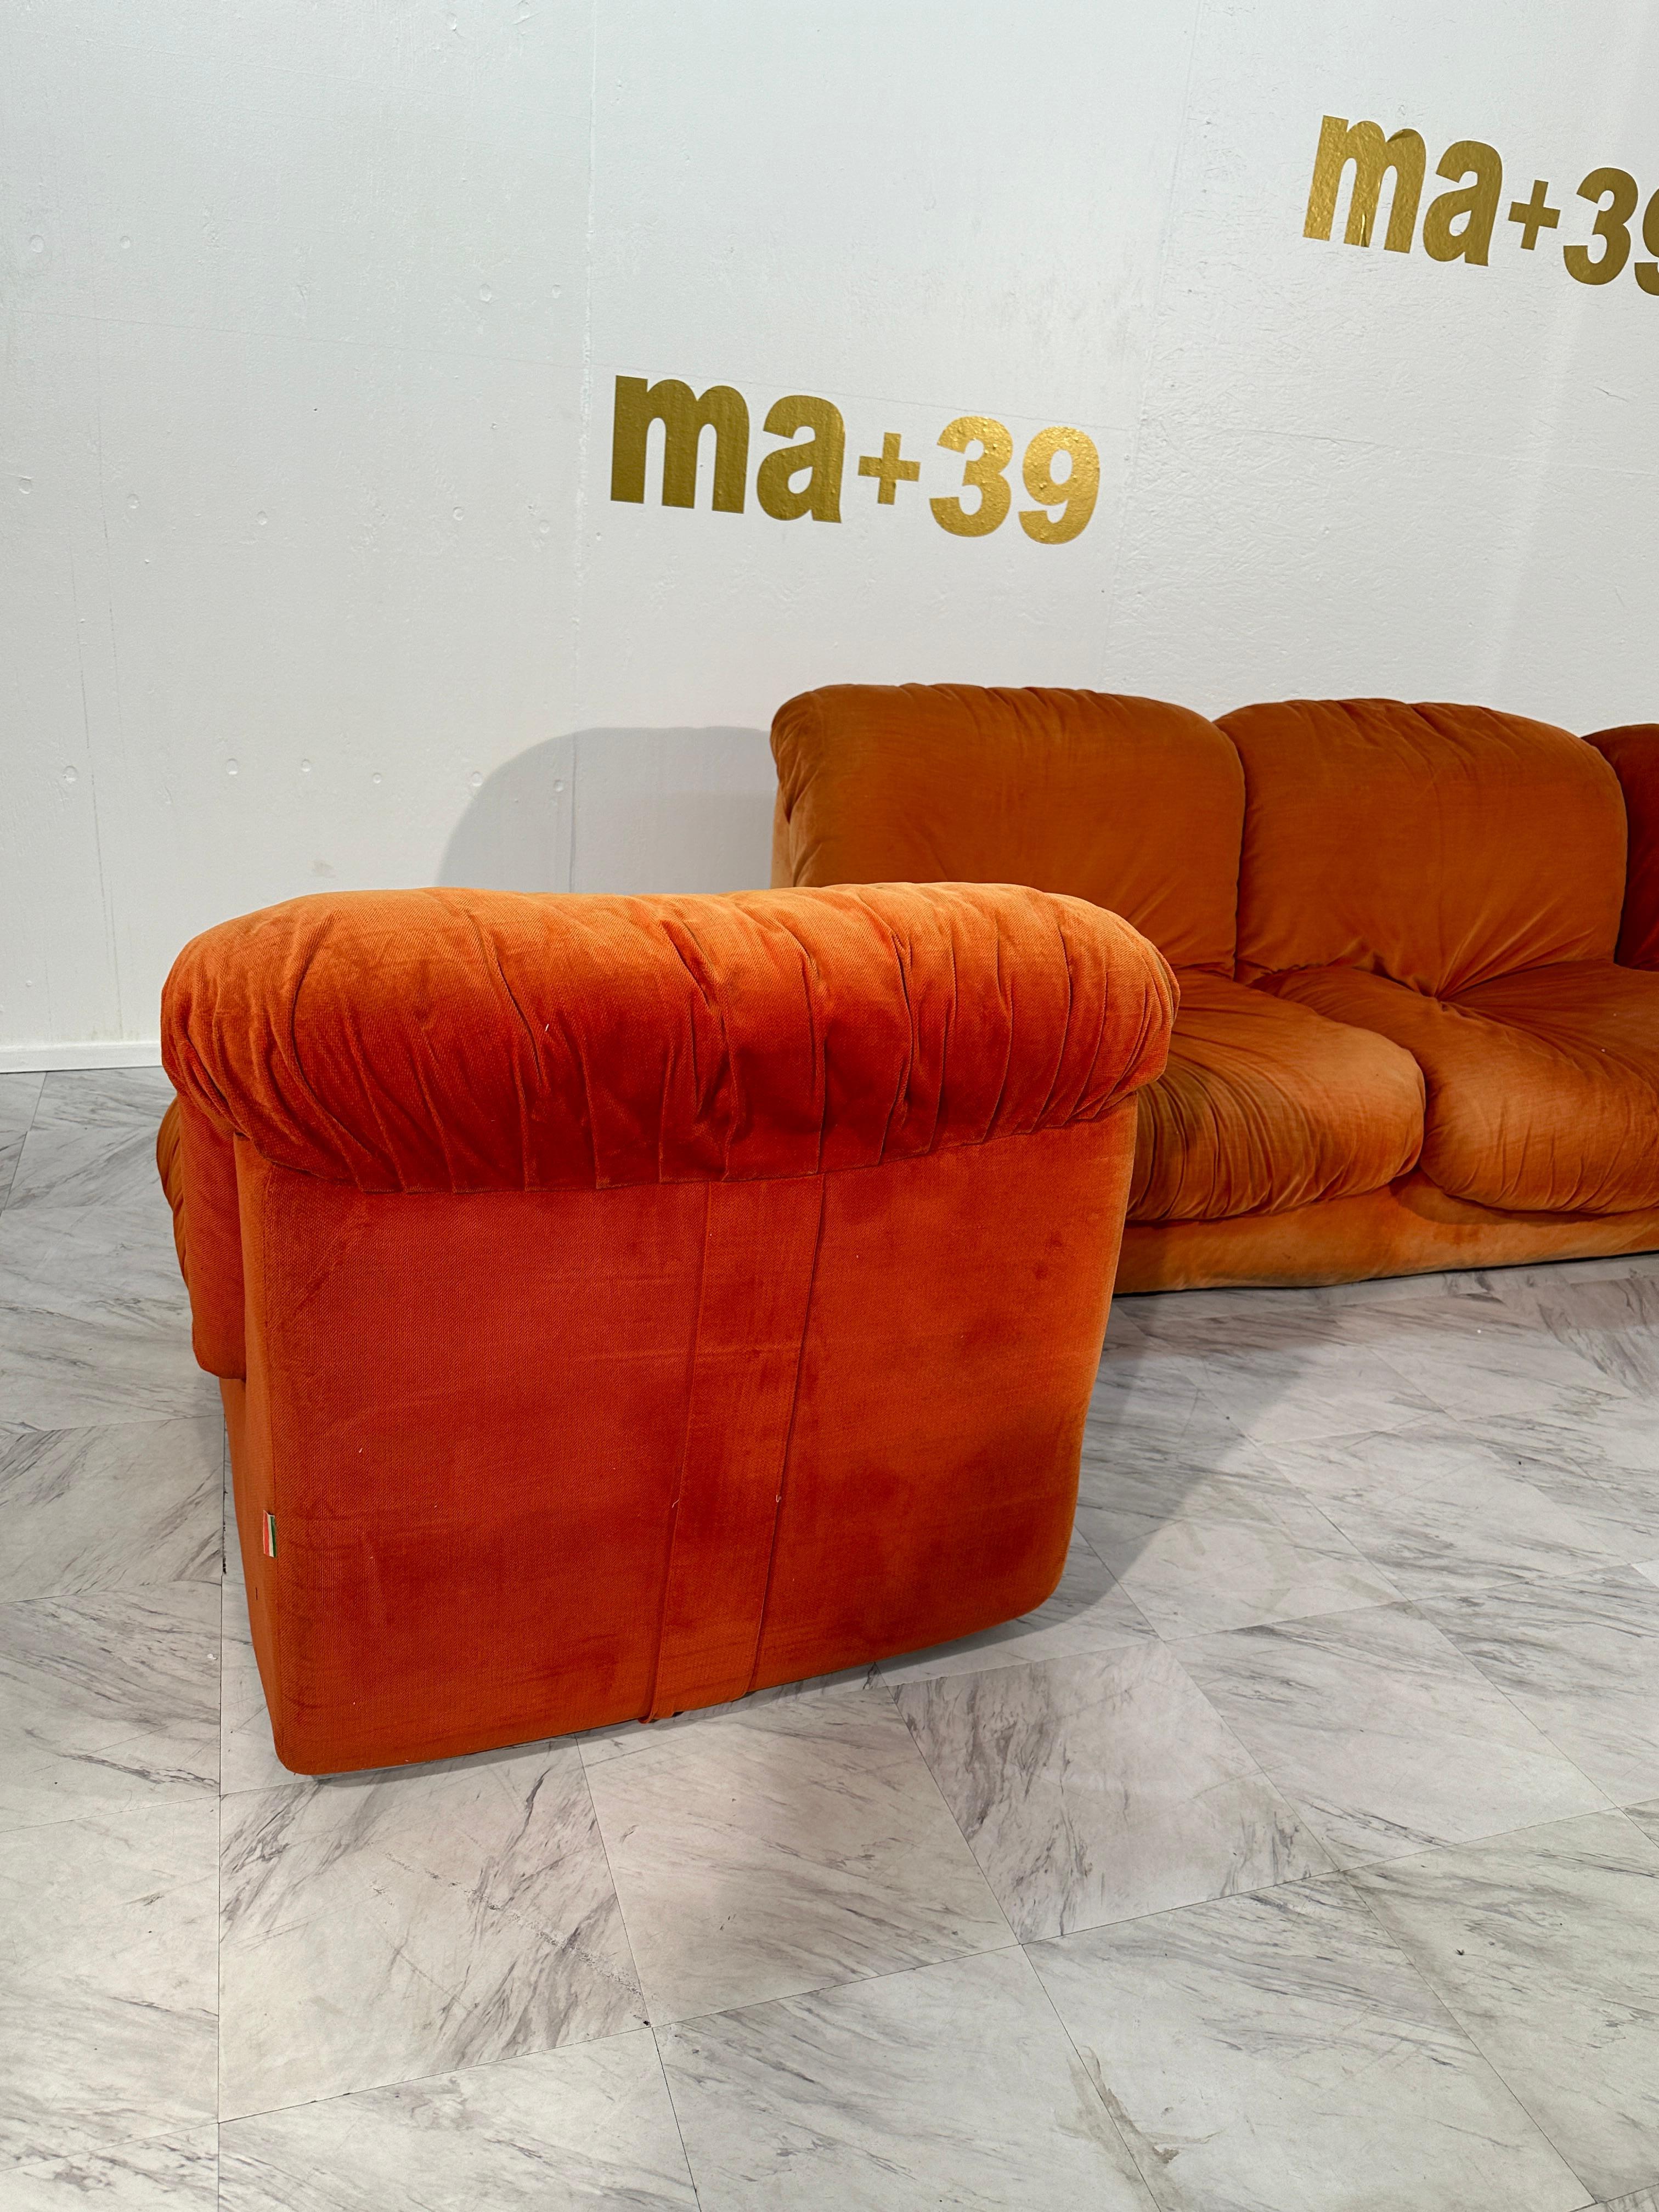 Das modulare italienische Vintage-Sofa von Airborne aus den 1960er Jahren ist eine Ikone des modernen Designs aus der Mitte des letzten Jahrhunderts. Dieses Sofa zeichnet sich durch seine modulare Bauweise aus, die eine flexible Anpassung an